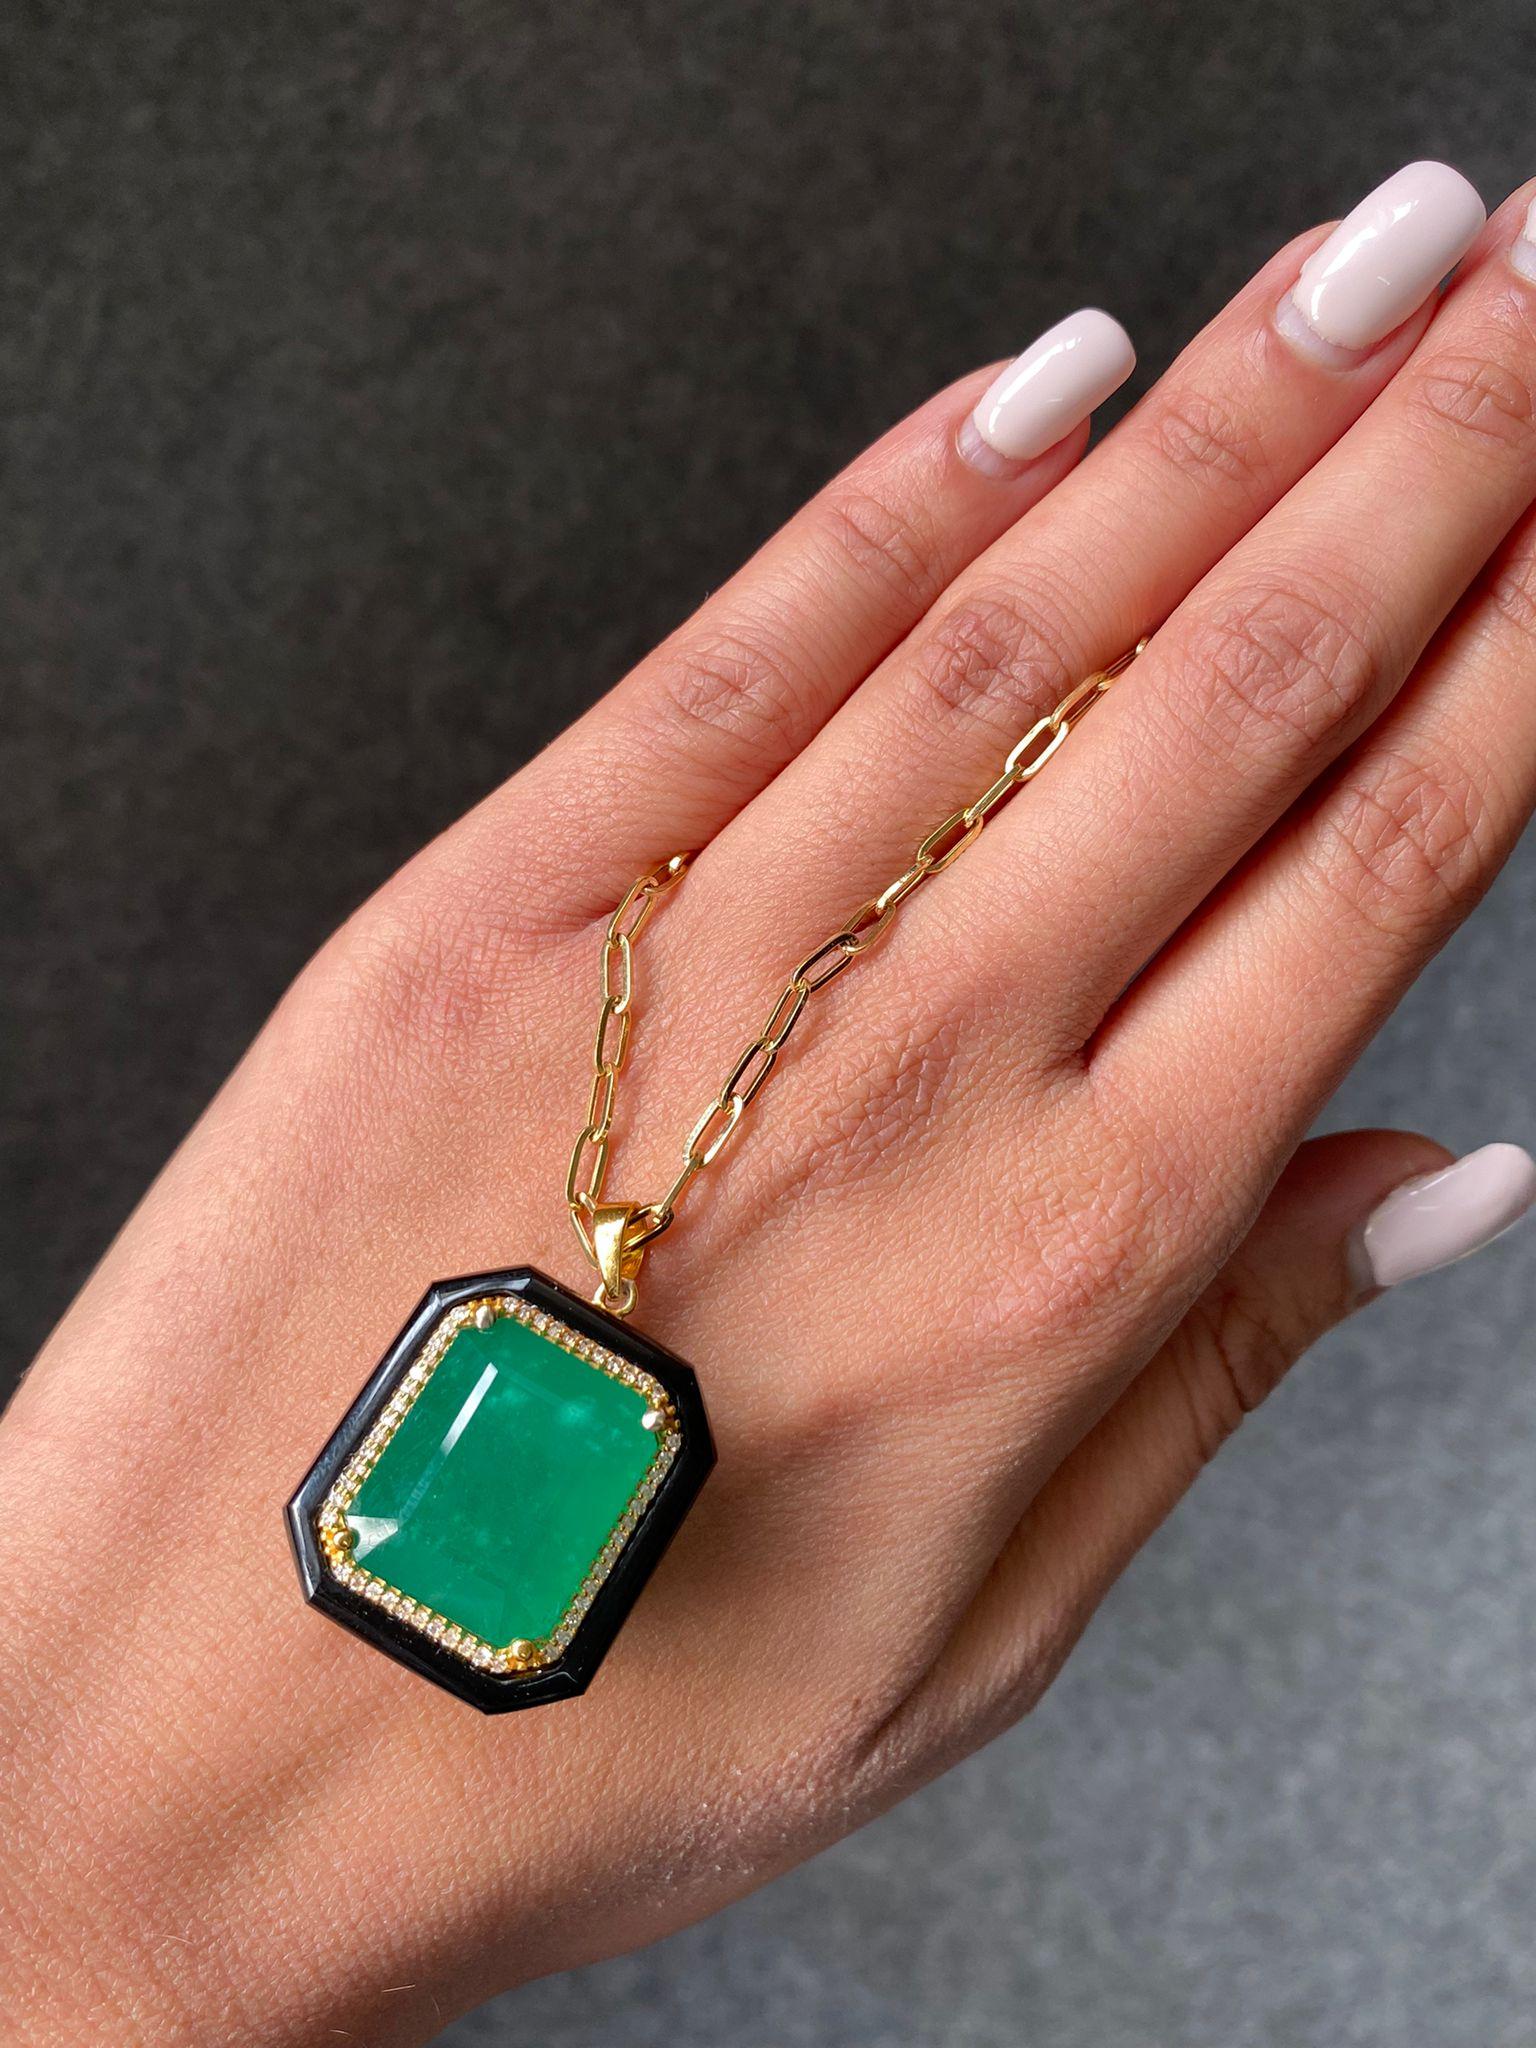 Ein Art-Deco inspirierte natürliche 24,34 Karat lebendige grüne sambische Smaragd, schwarzer Onyx und Diamant Gliederkette Anhänger Halskette, in massivem 18K Gelbgold gesetzt. Die Gliederkette ist 18 Zoll lang.
Bitte senden Sie uns weitere